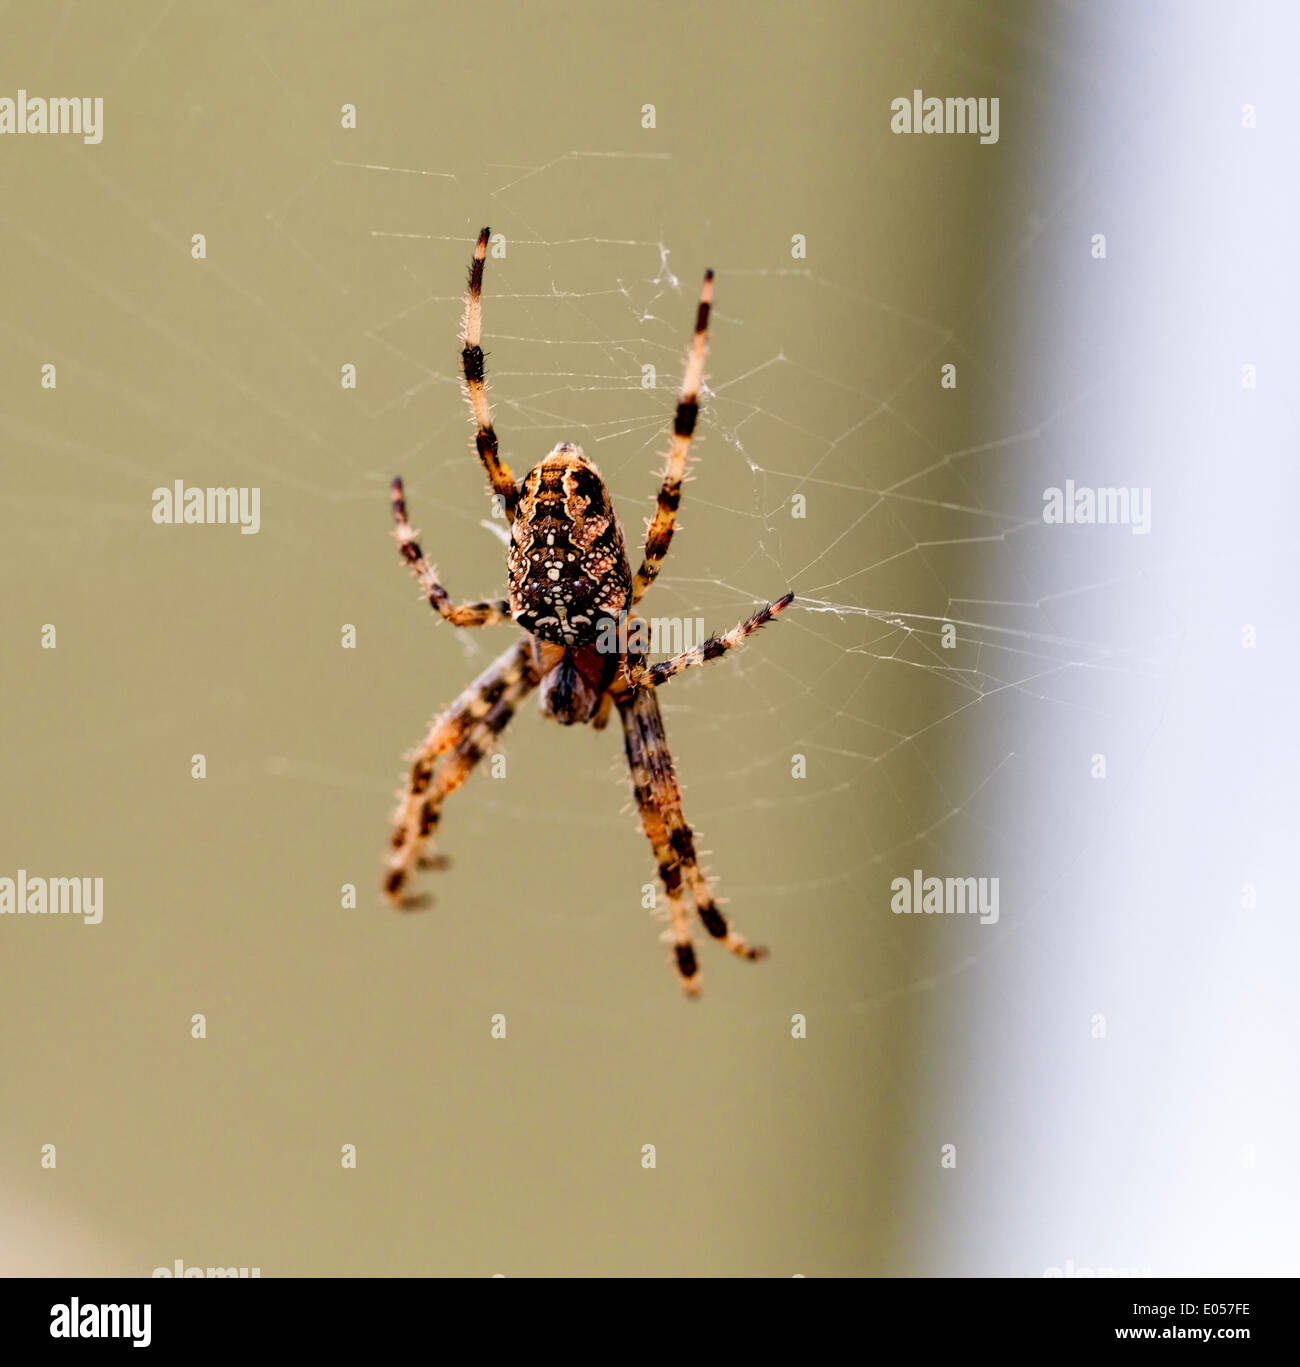 Une araignée tisse un filet araignée pour ses victimes, Eine Spinne spinnt ein Spinnennetz fuer ihre Opfer Banque D'Images